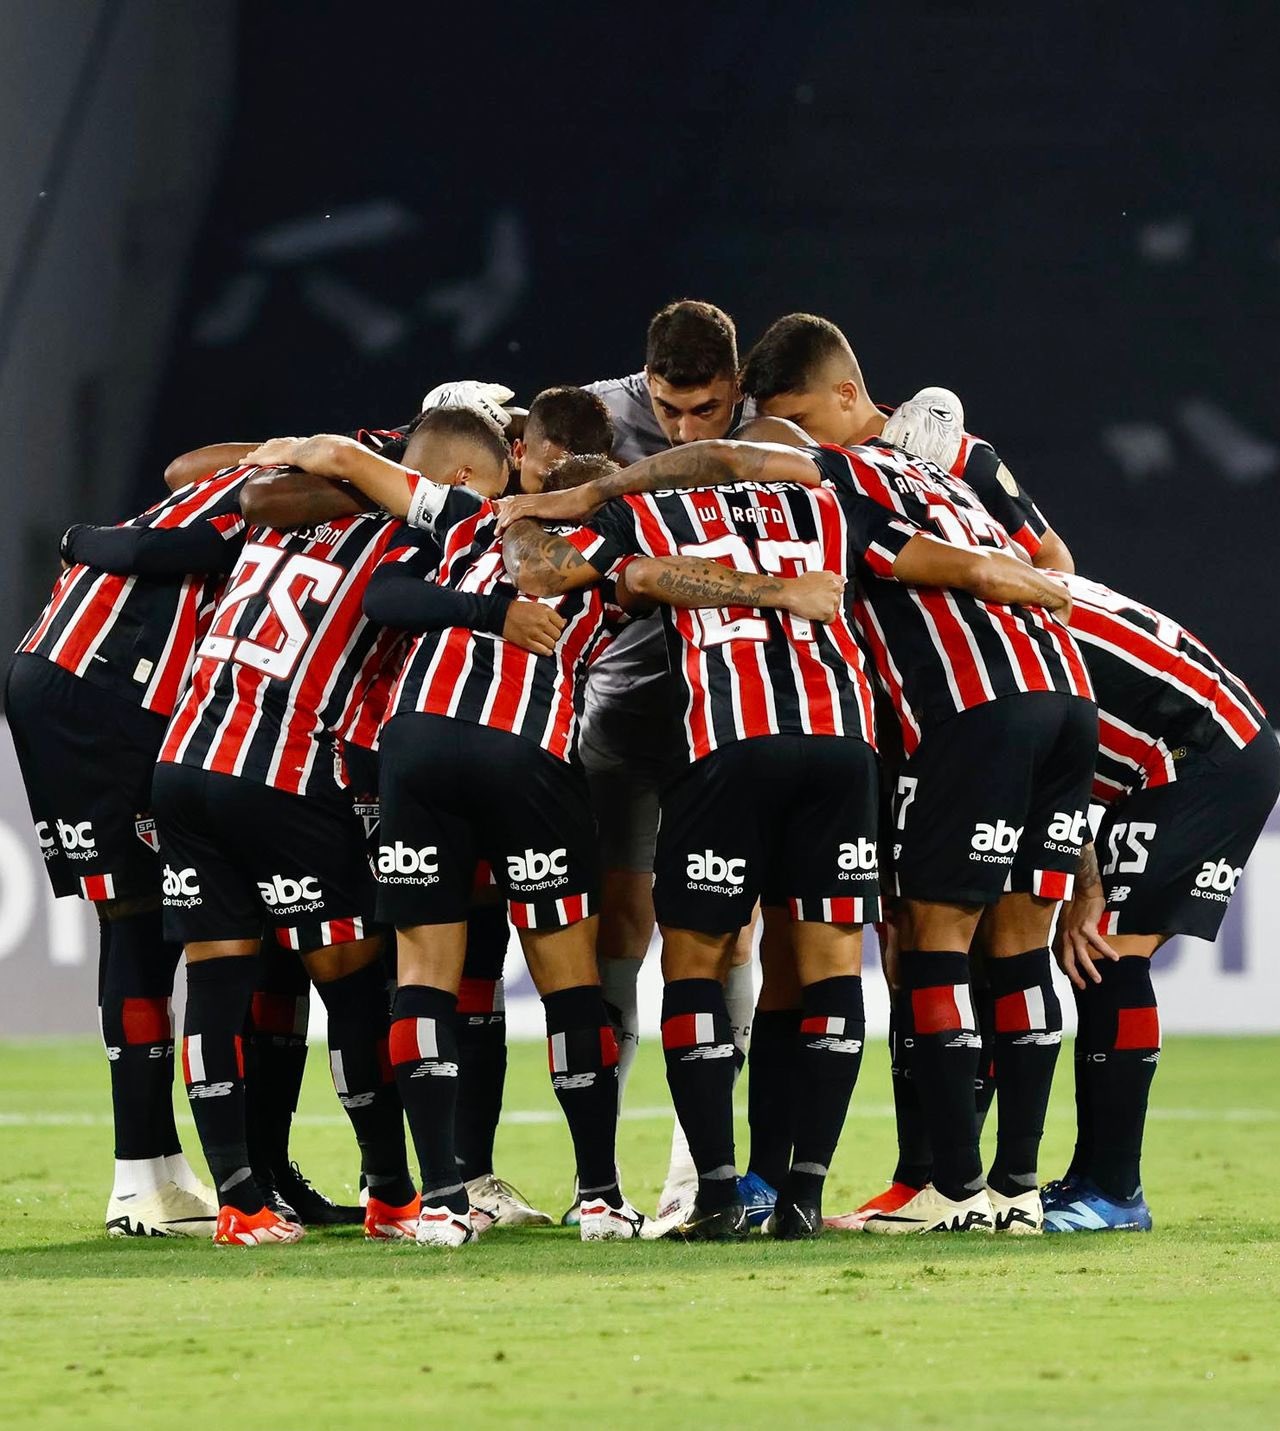 Com três lesões no 1º tempo, São Paulo perde para Talleres na Libertadores; veja melhores momentos